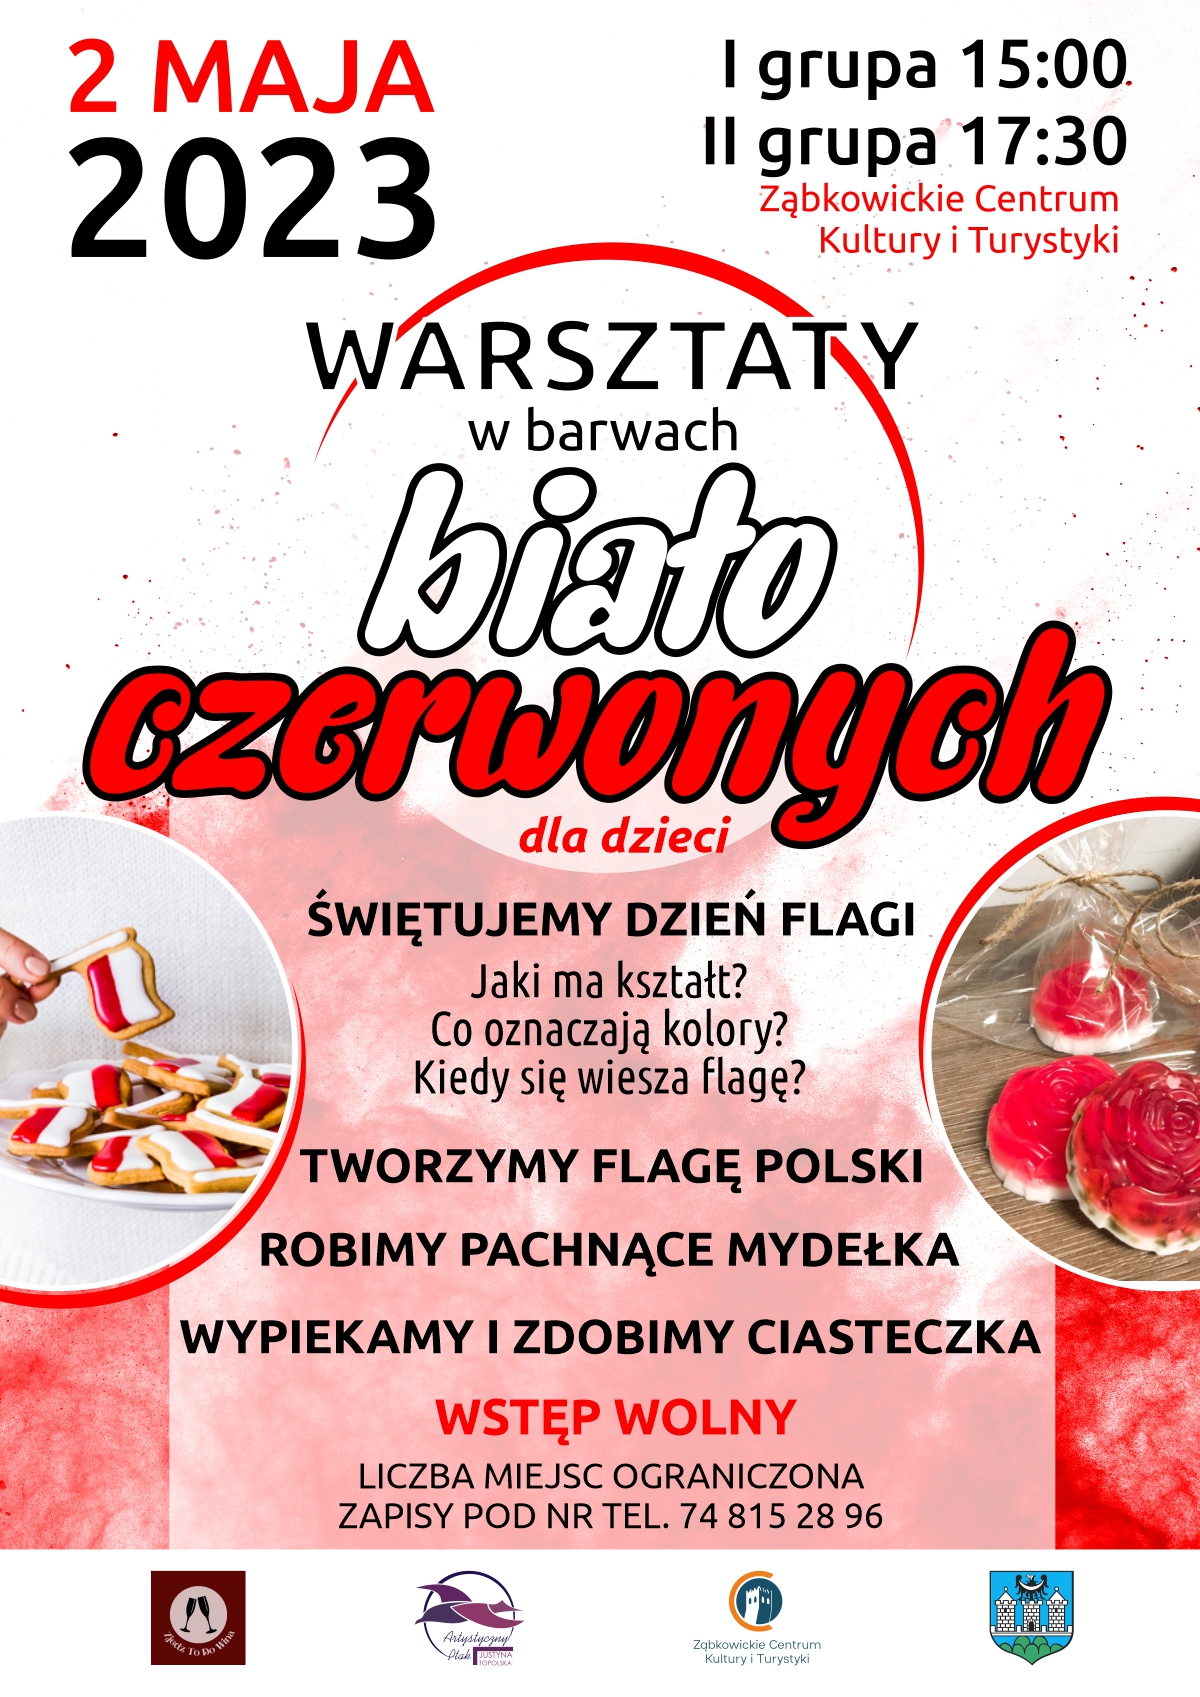 Plakat informujący o warsztatach "W barwach biało czerwonych" dla dzieci 2 maja 2023 od godziny 15:00 w Ząbkowickim Centrum Kultury i Turystyki.